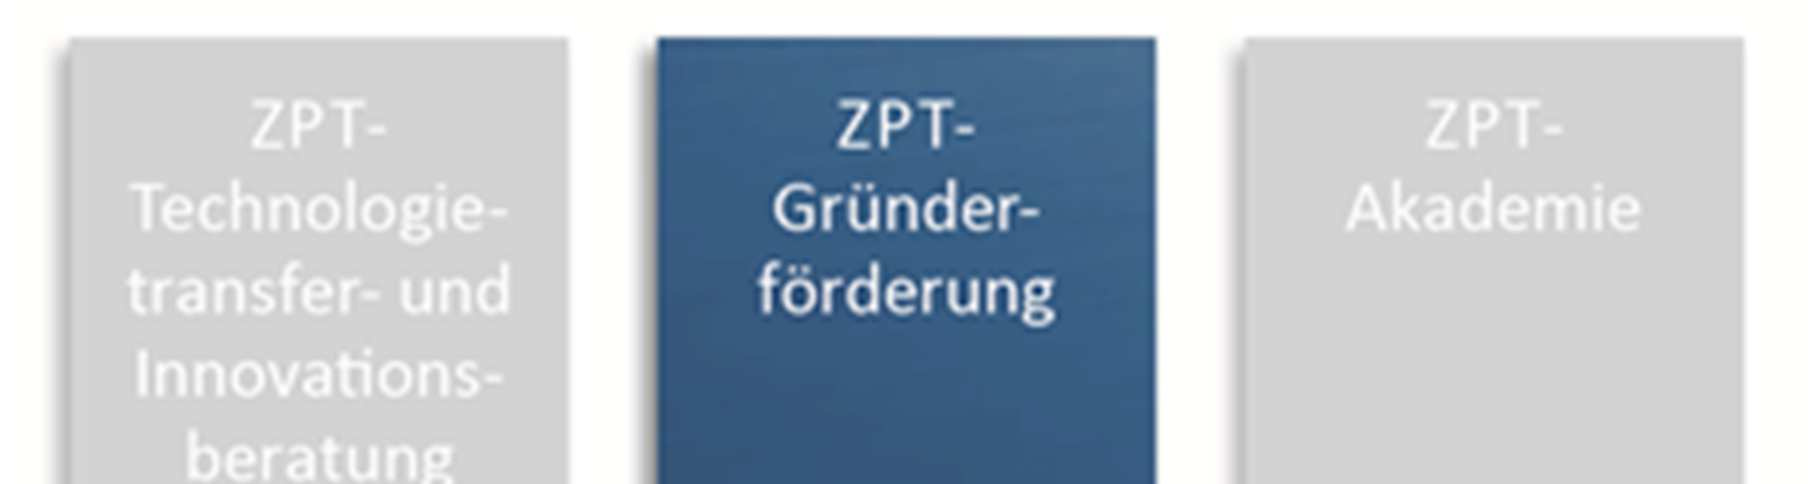 Gliederungspunkt C Ziffer 2). Im Folgenden werden zur konzipierten ZPT-Gründerförderung näher beschrieben und erläutert: die Zielgruppe der ZPT-Gründerförderung (siehe nachfolgende Ziffer 2.1.